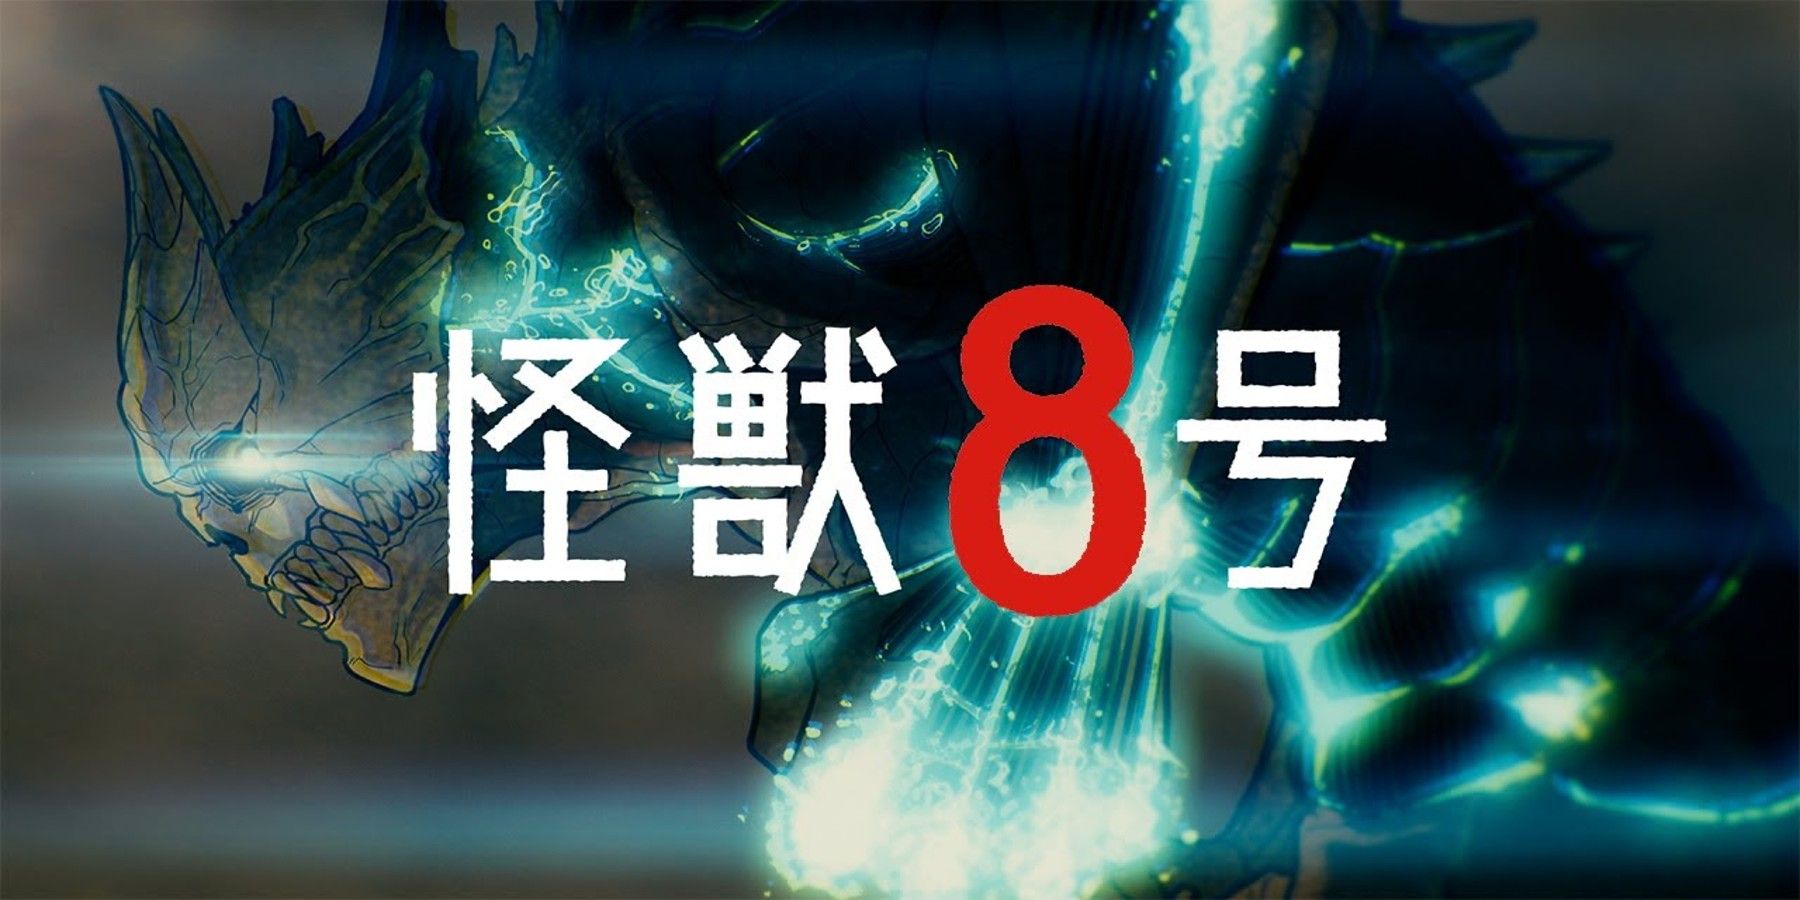 Kaiju No 8 Anime Officially Announced